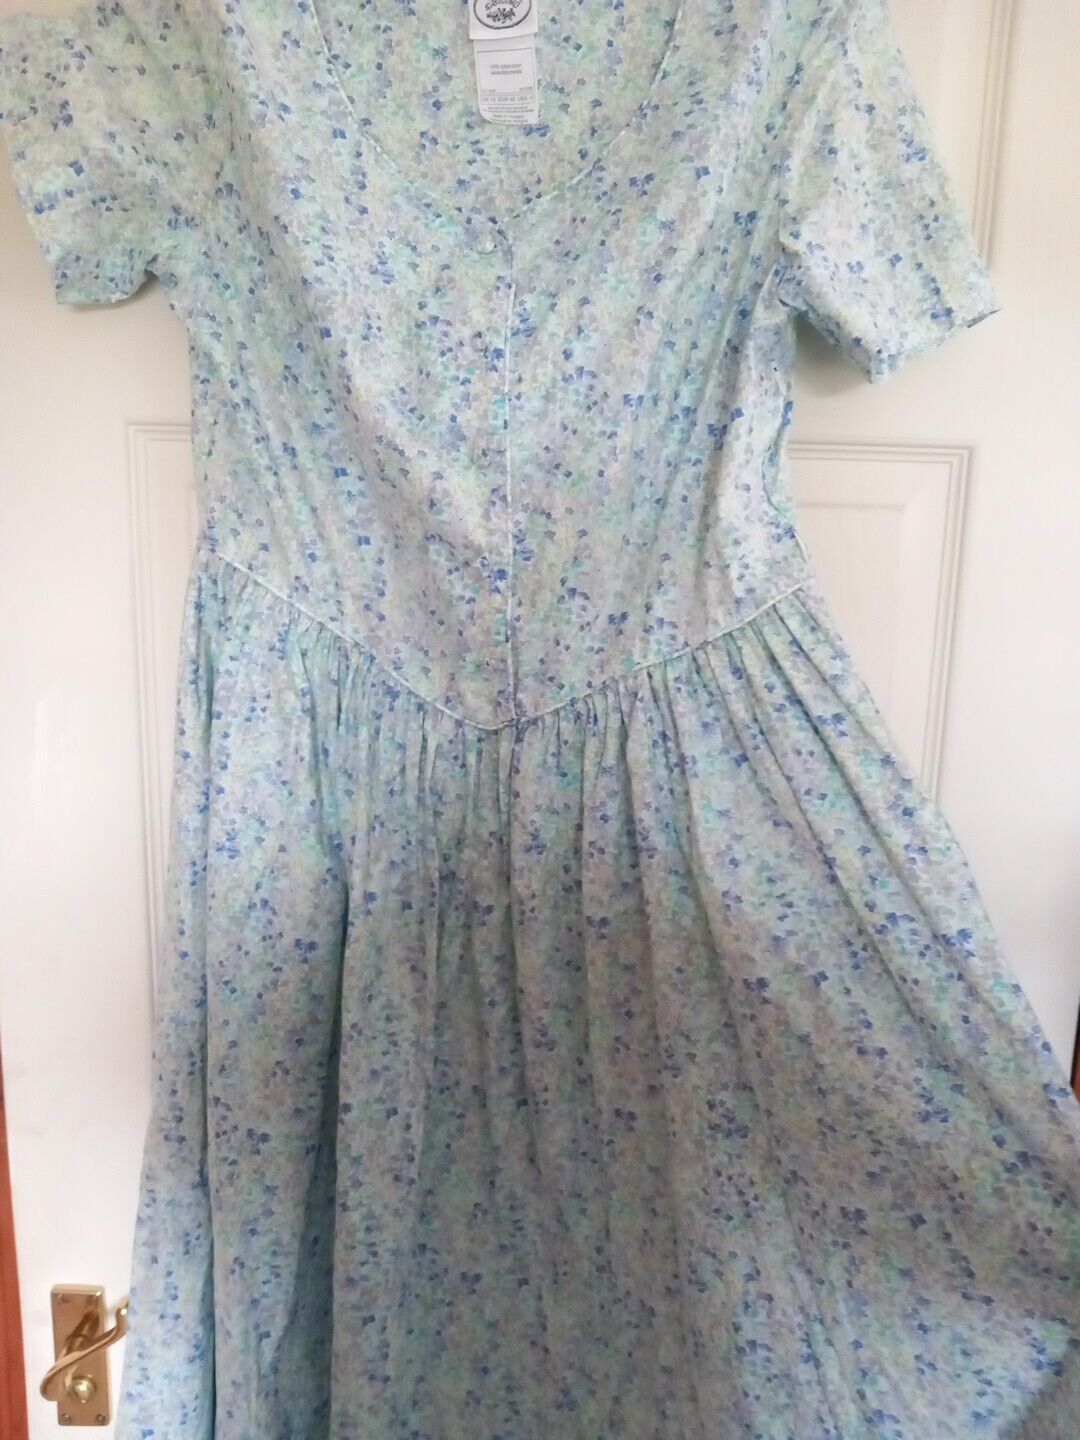 Rare Vintage Laura Ashley Blue Floral Dress Size 16